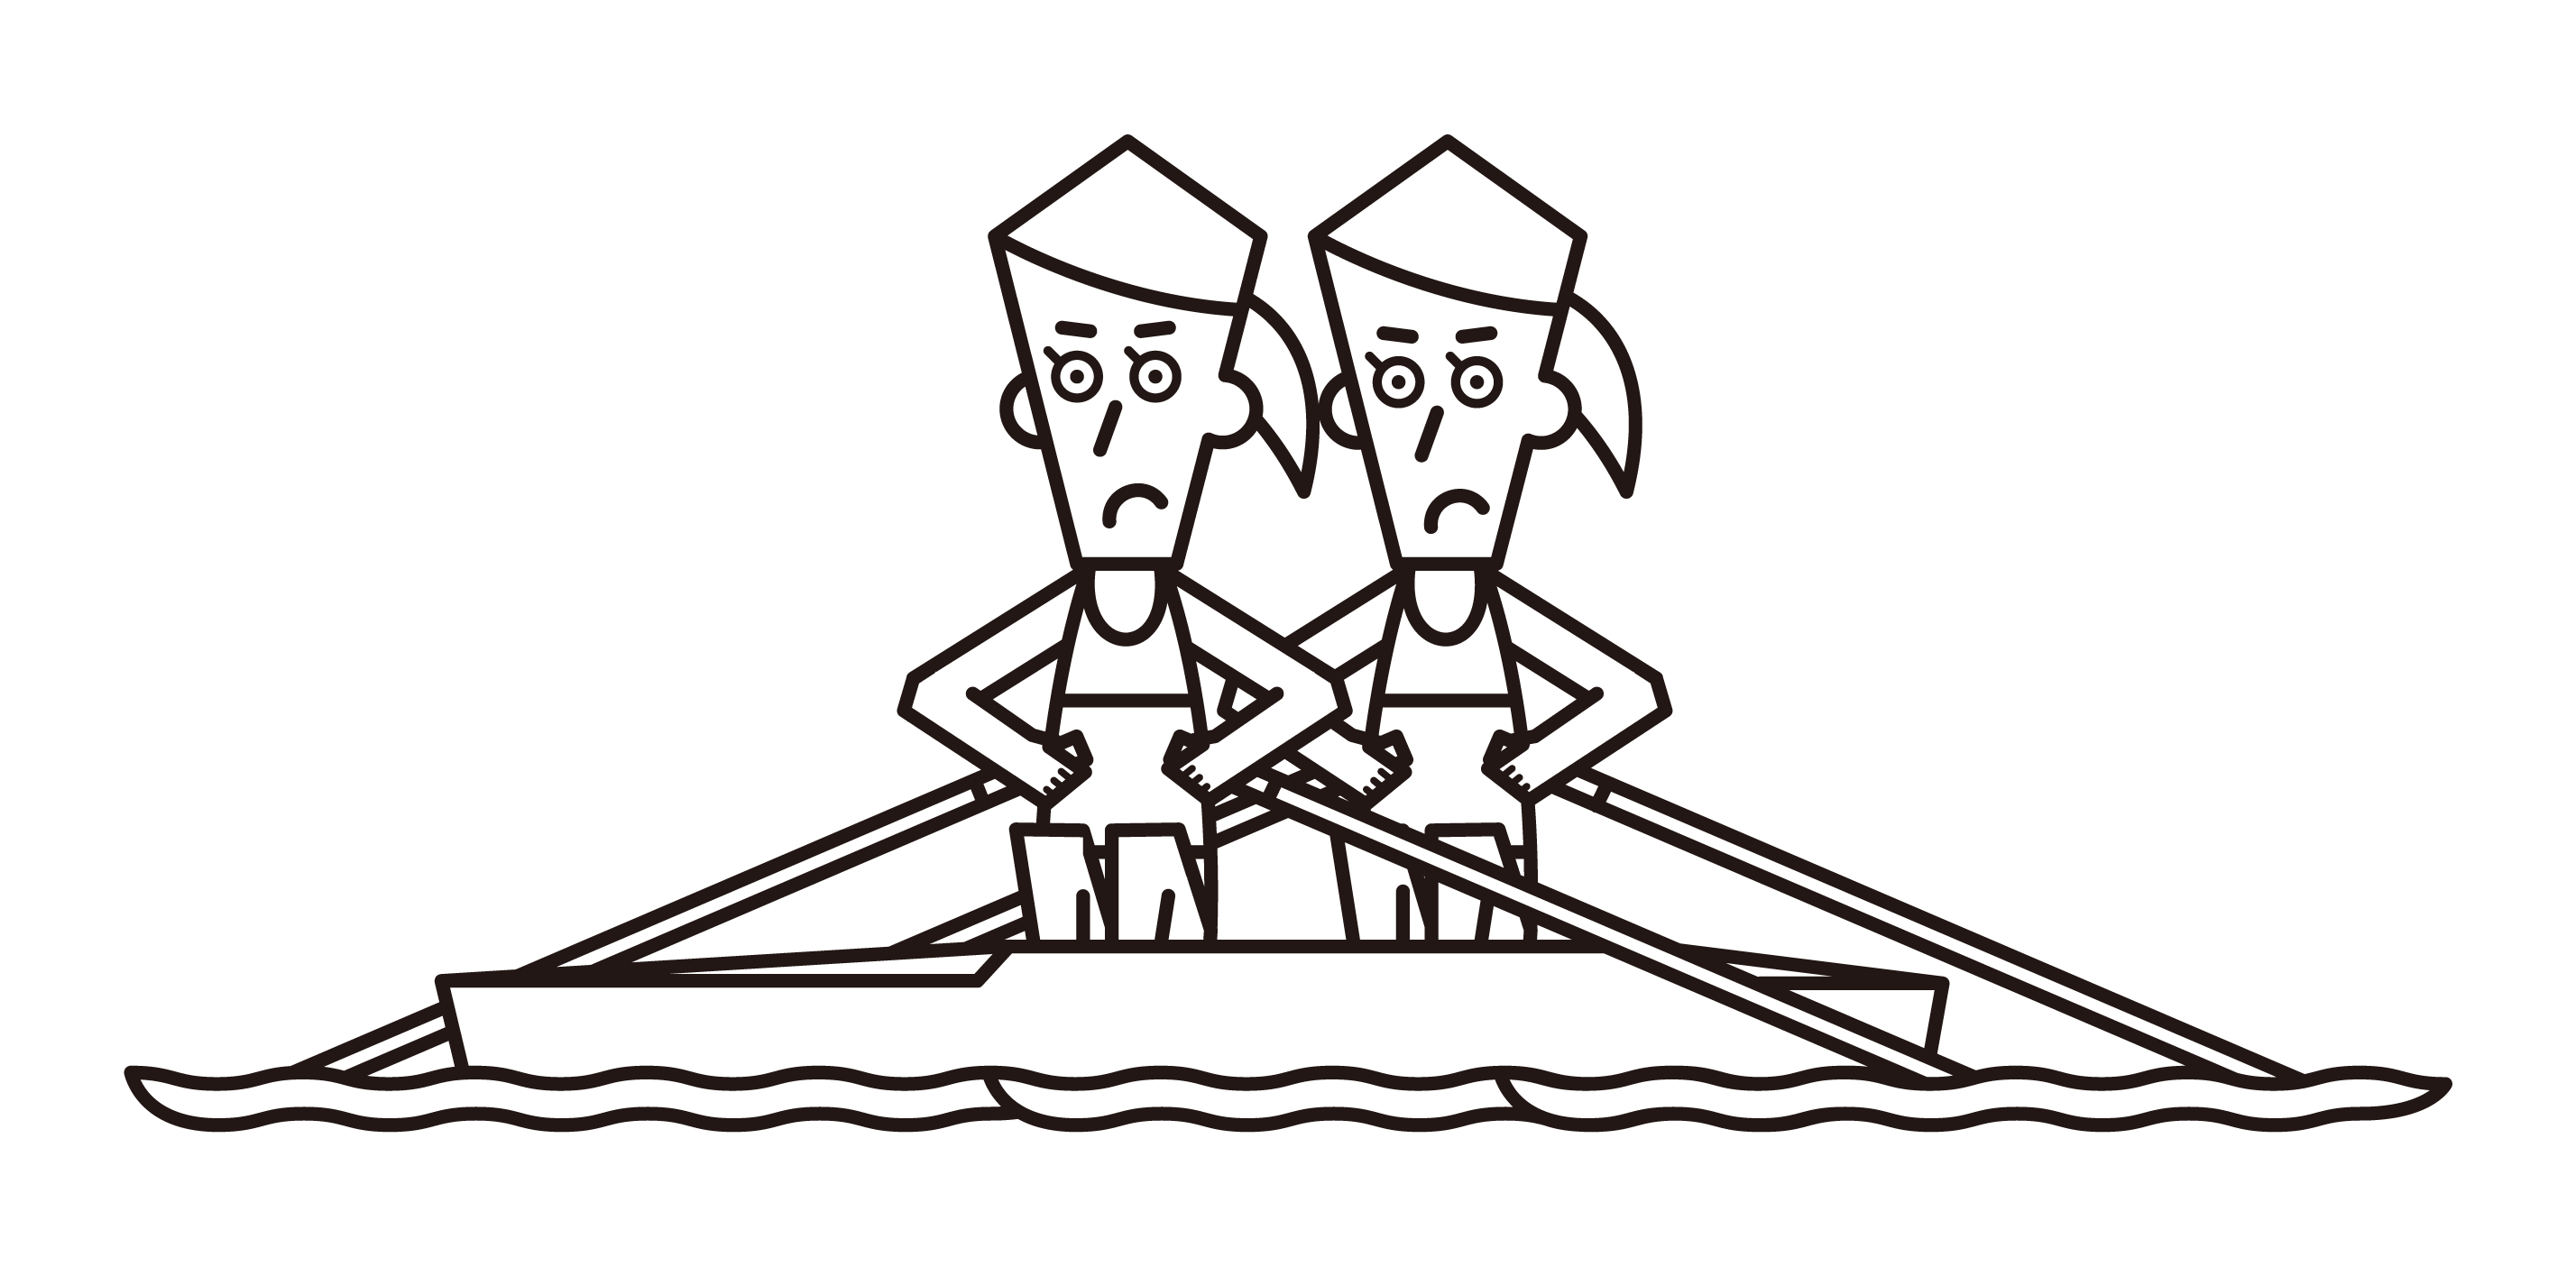 ボート競技（ダブルスカル）の選手たち（女性）のイラスト